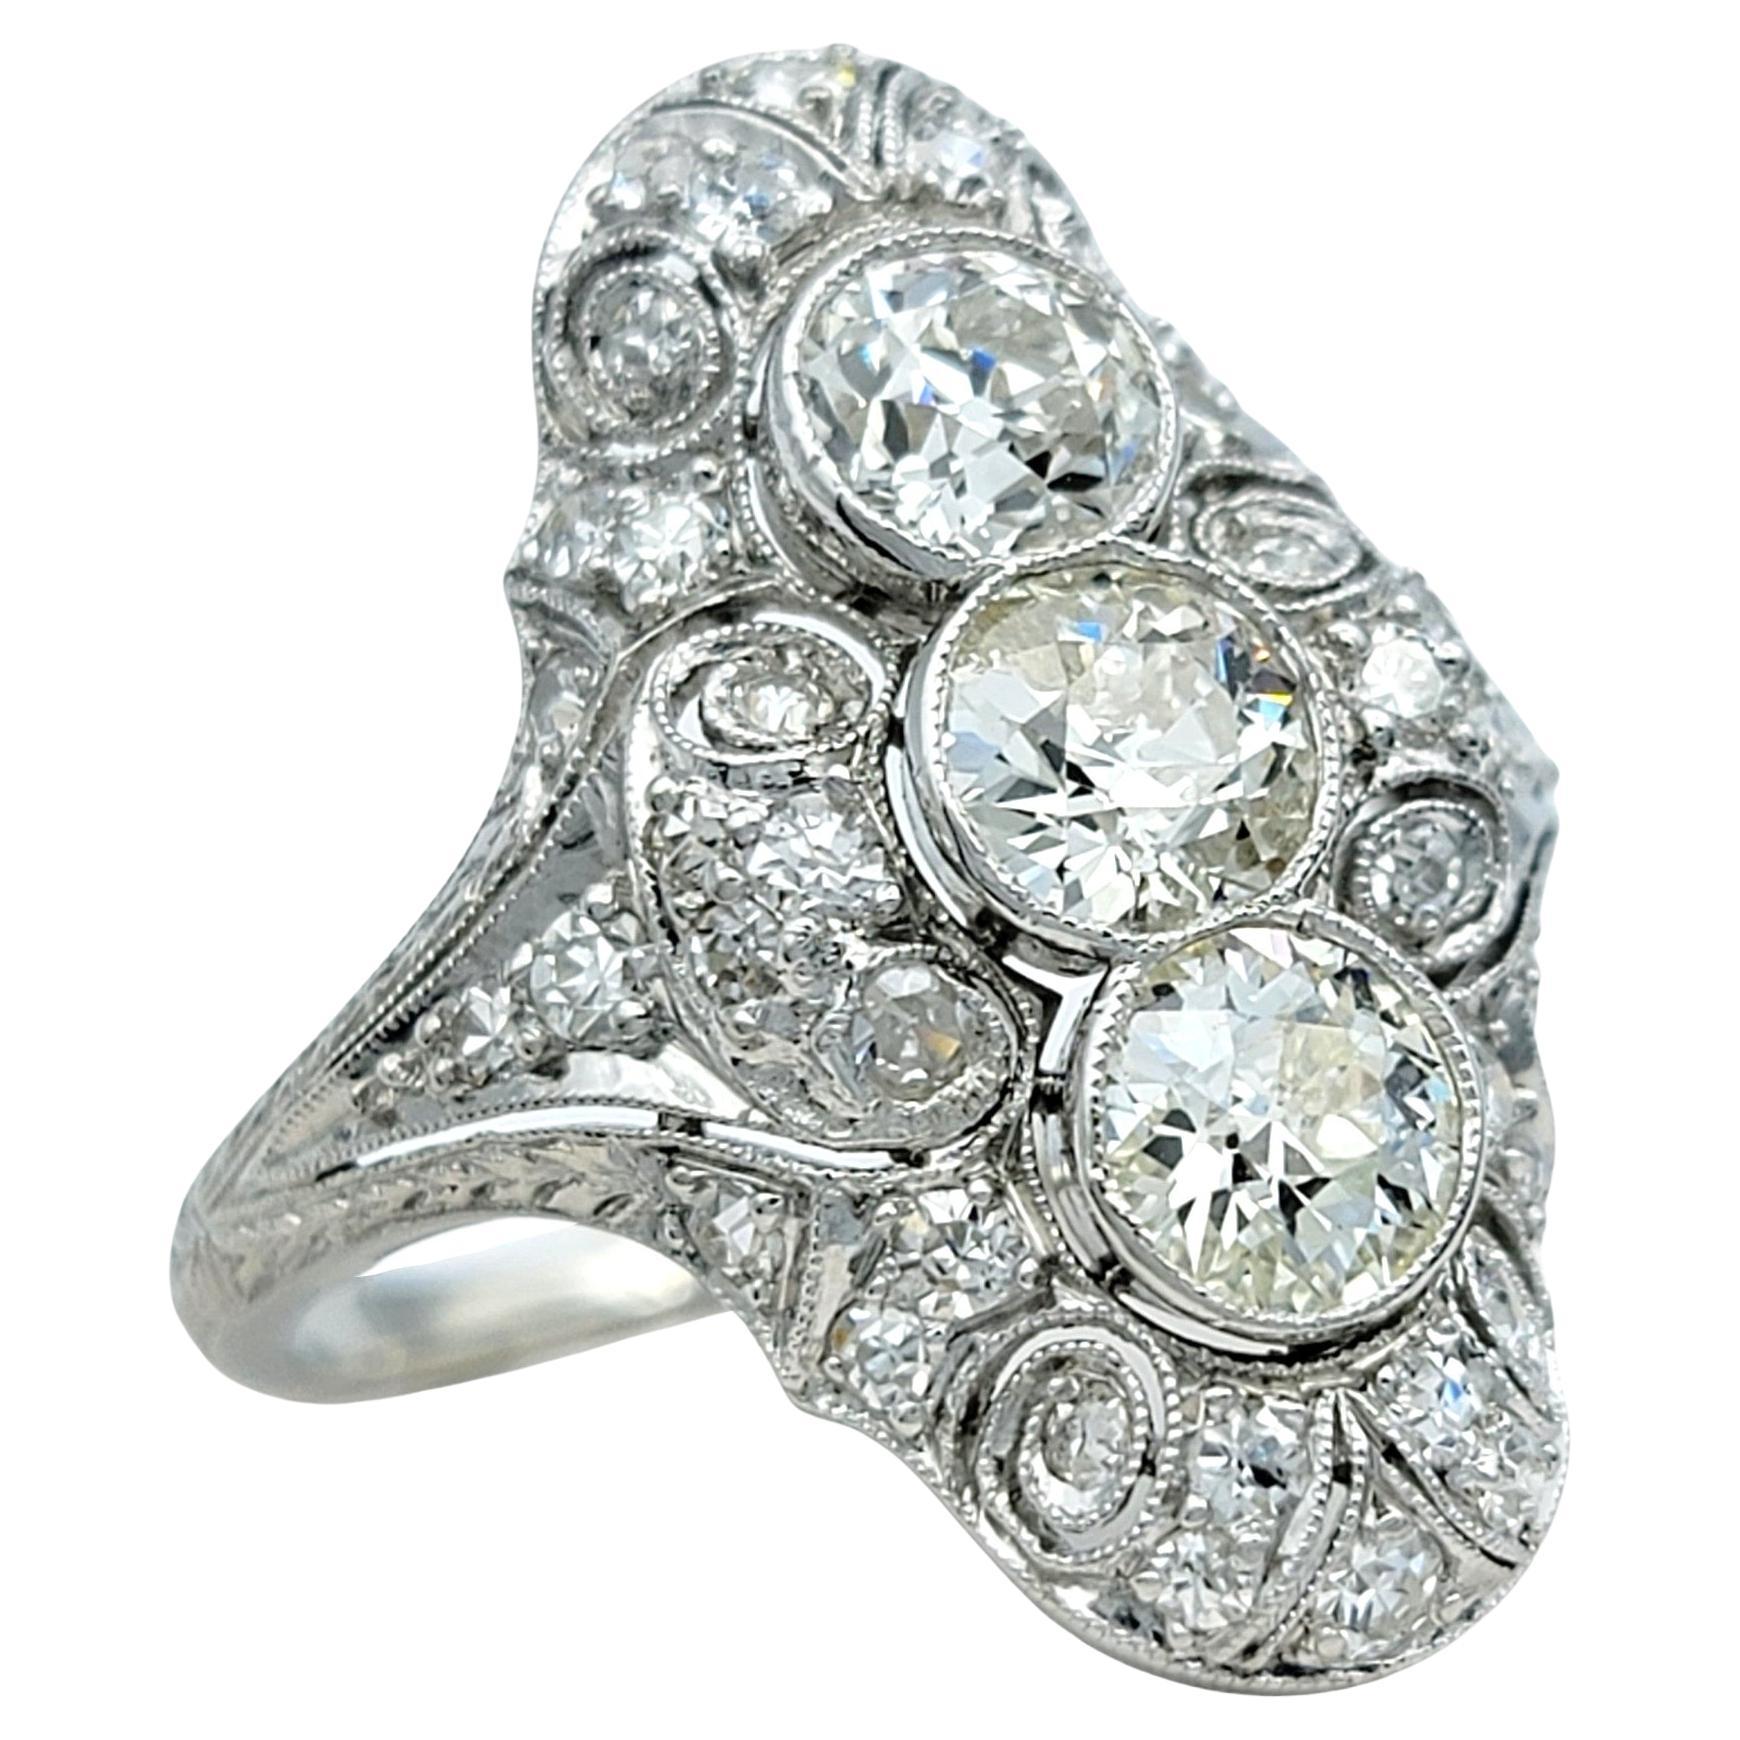 Art Deco Old European Cut Diamond Cocktail Ring with Milgrain Design in Platinum For Sale